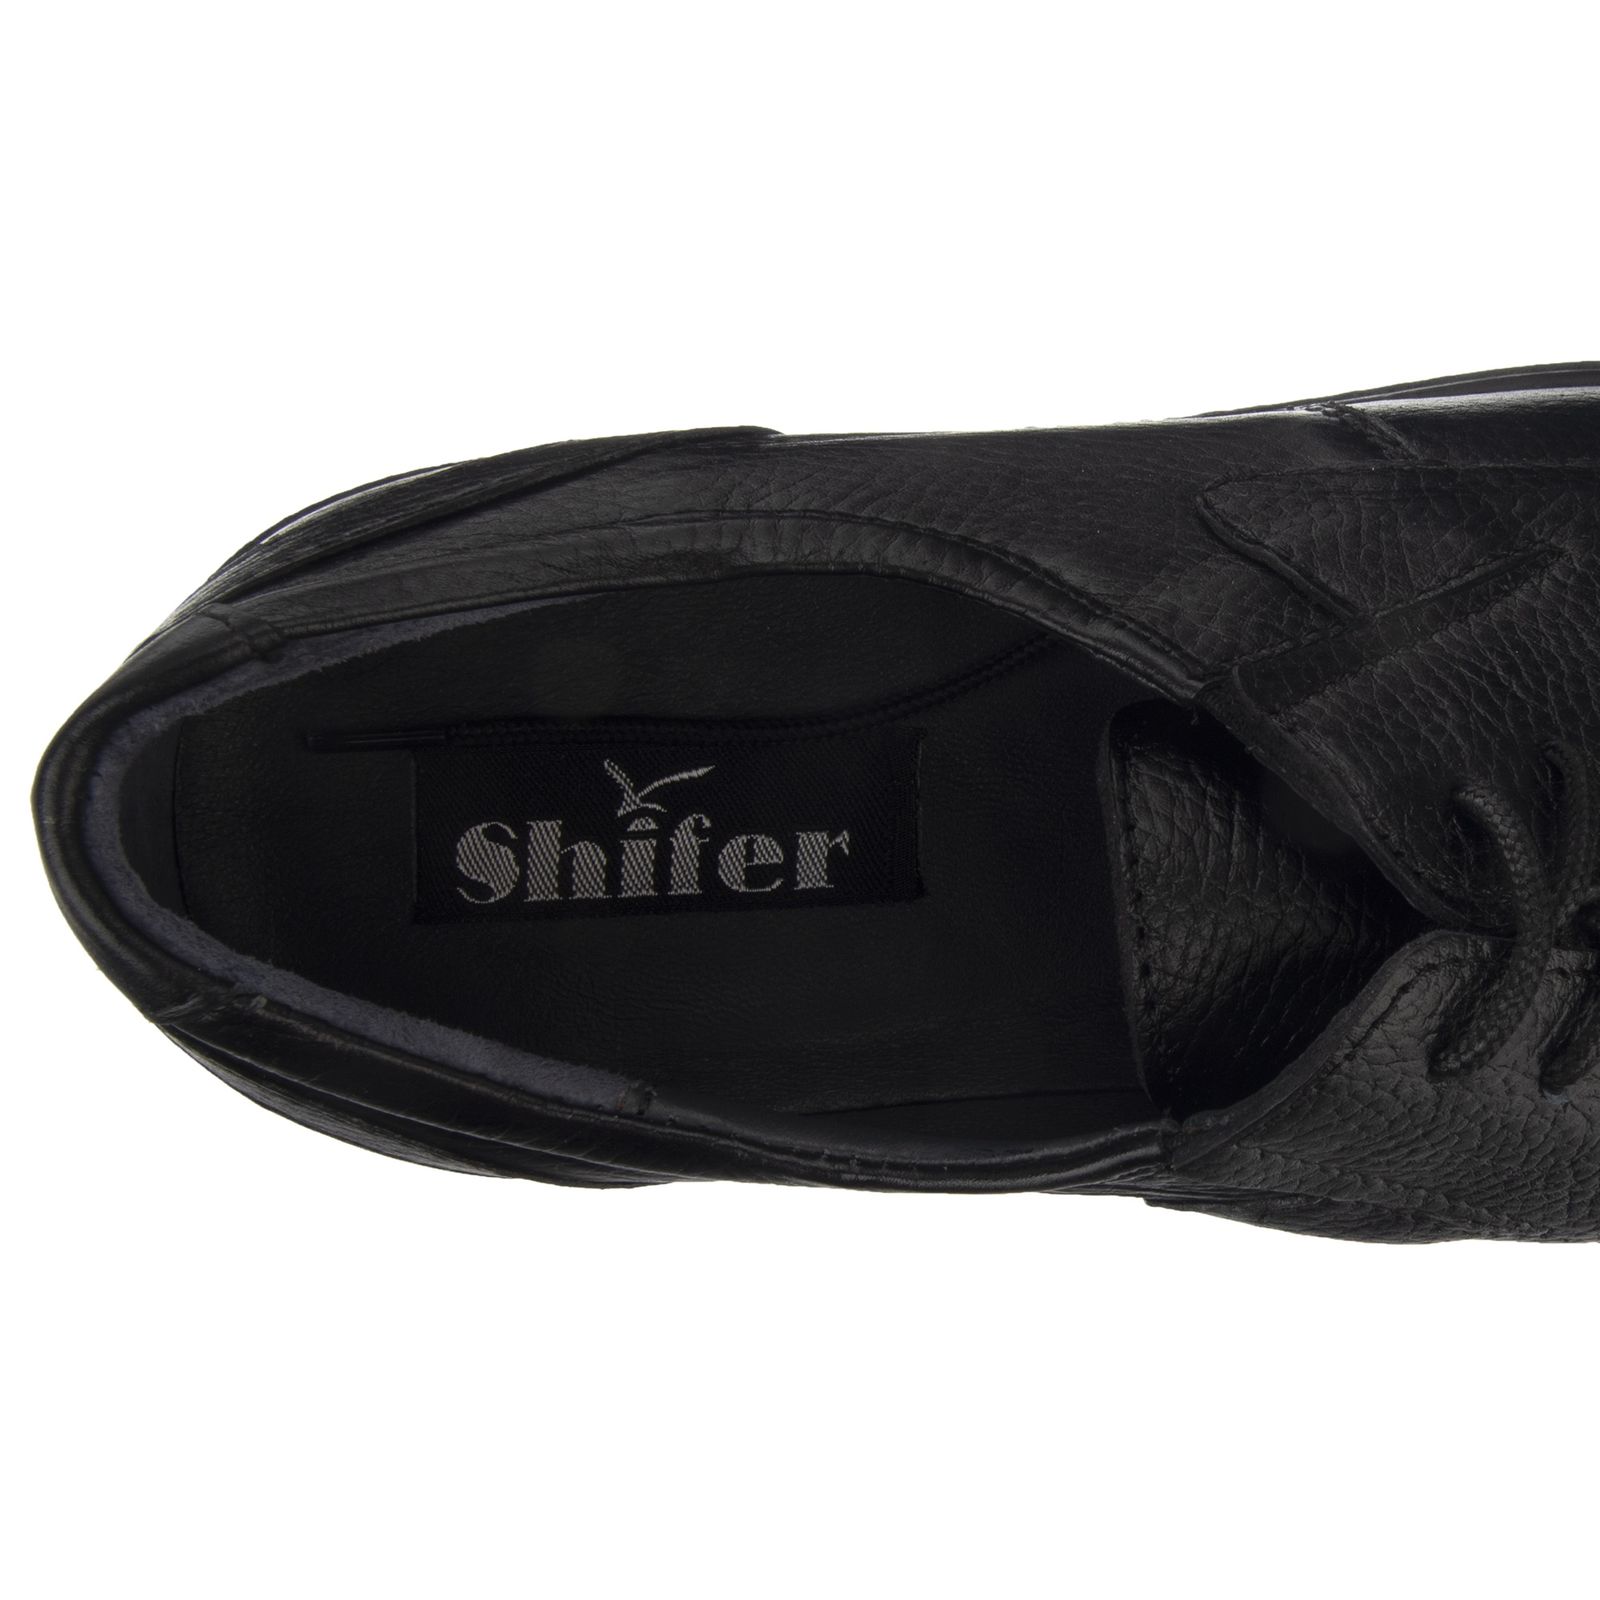 کفش روزمره مردانه شیفر مدل 7216B-101 - مشکی - 8